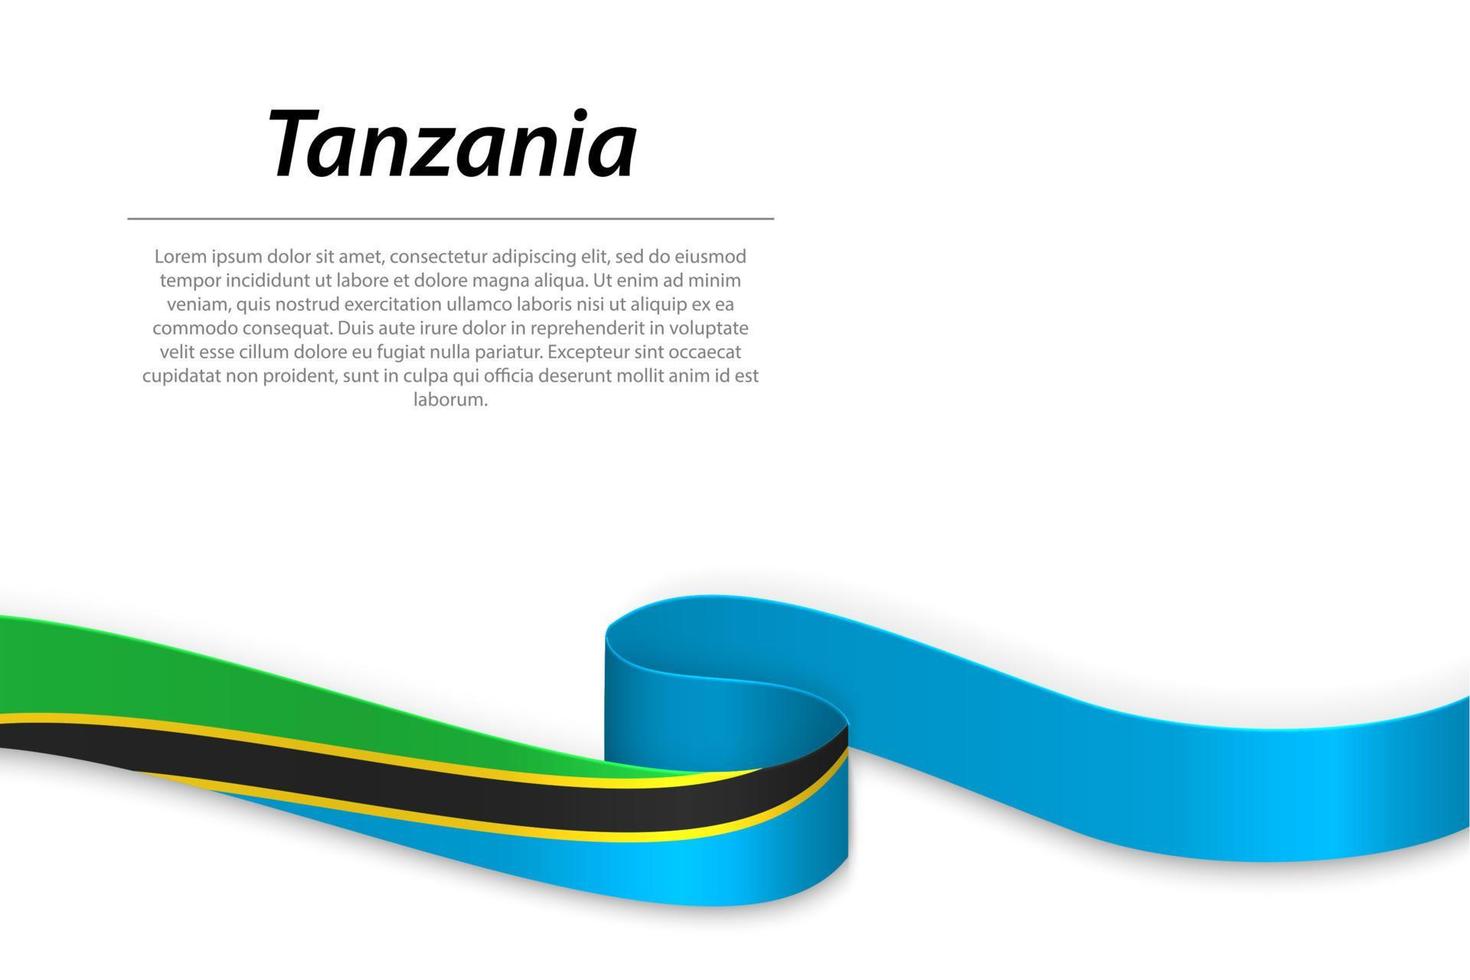 schwenkendes band oder banner mit flagge von tansania vektor